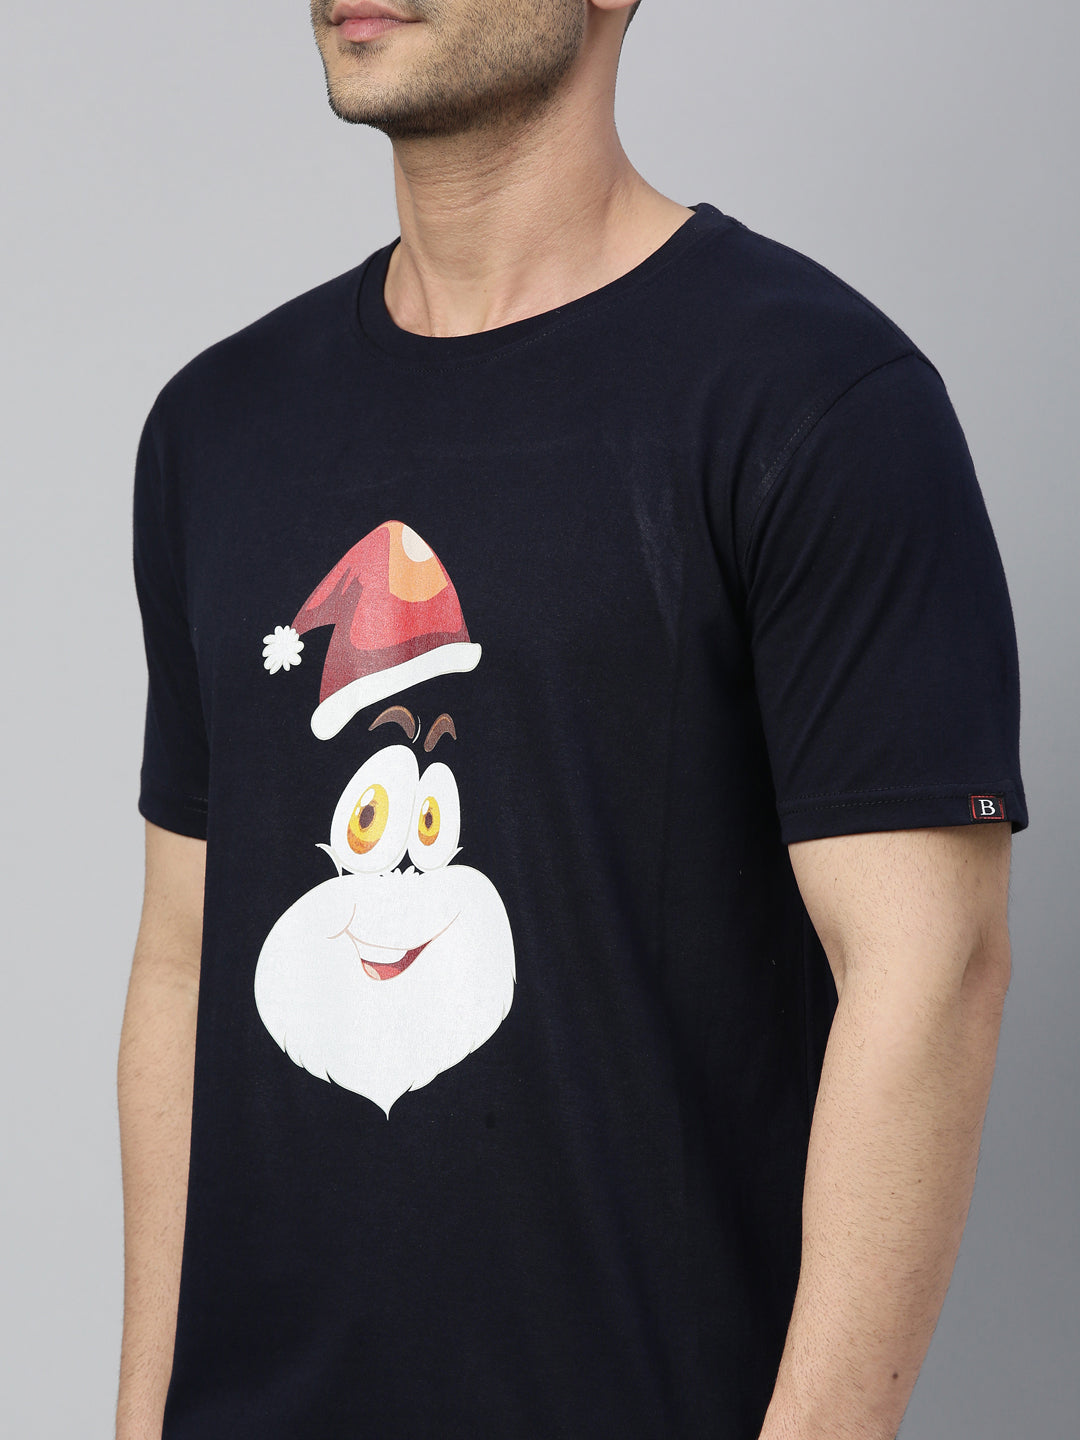 Santa T-Shirt Graphic T-Shirts Bushirt   